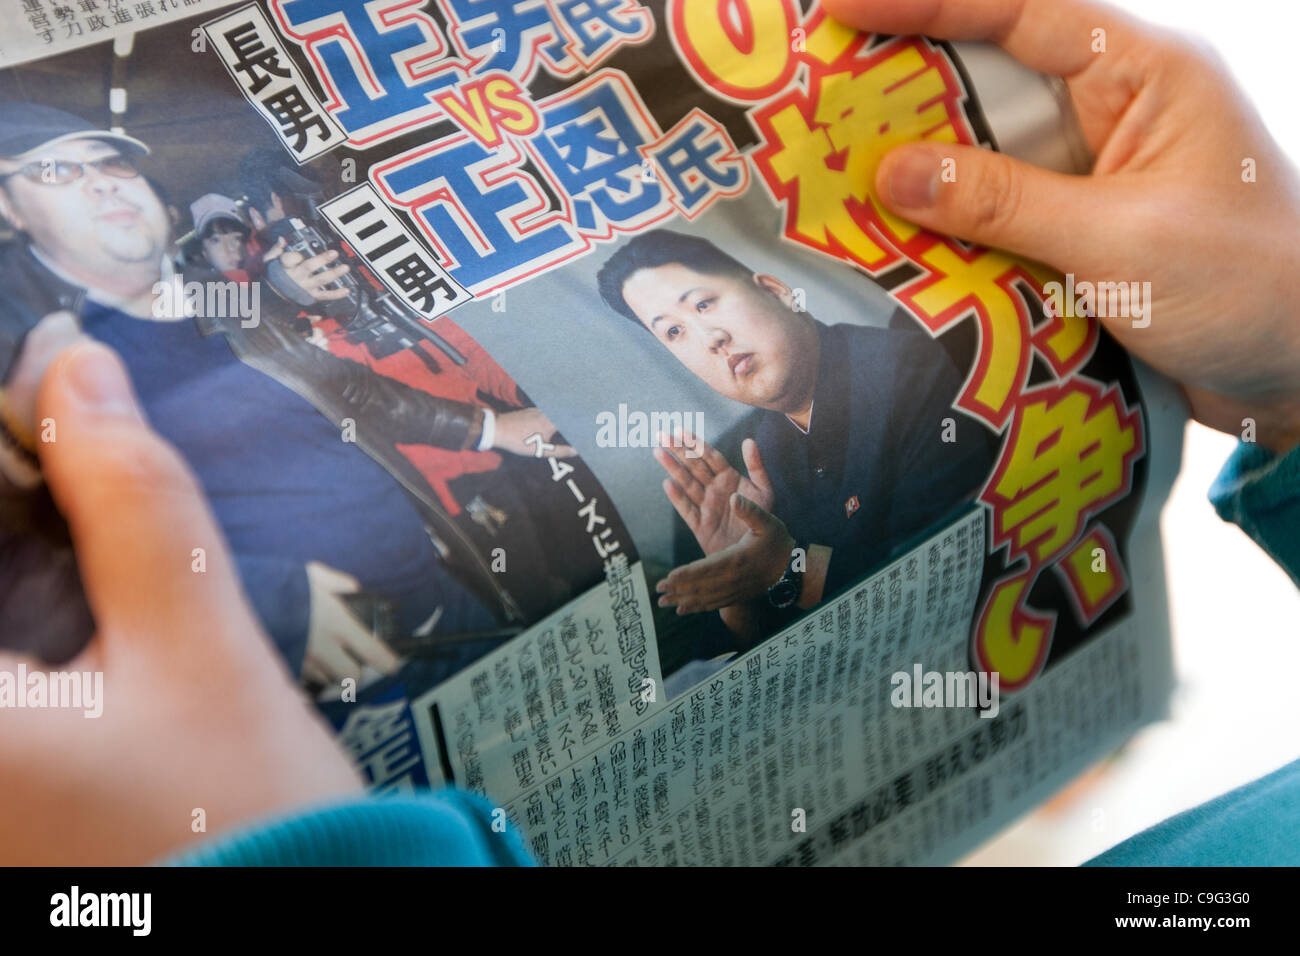 Images de Kim Jong-Un apparaissent dans les journaux japonais, à la suite de la mort de son père et président nord-coréen Kim Jong-il, à Tokyo, au Japon, le mardi 20 décembre 2011. Banque D'Images